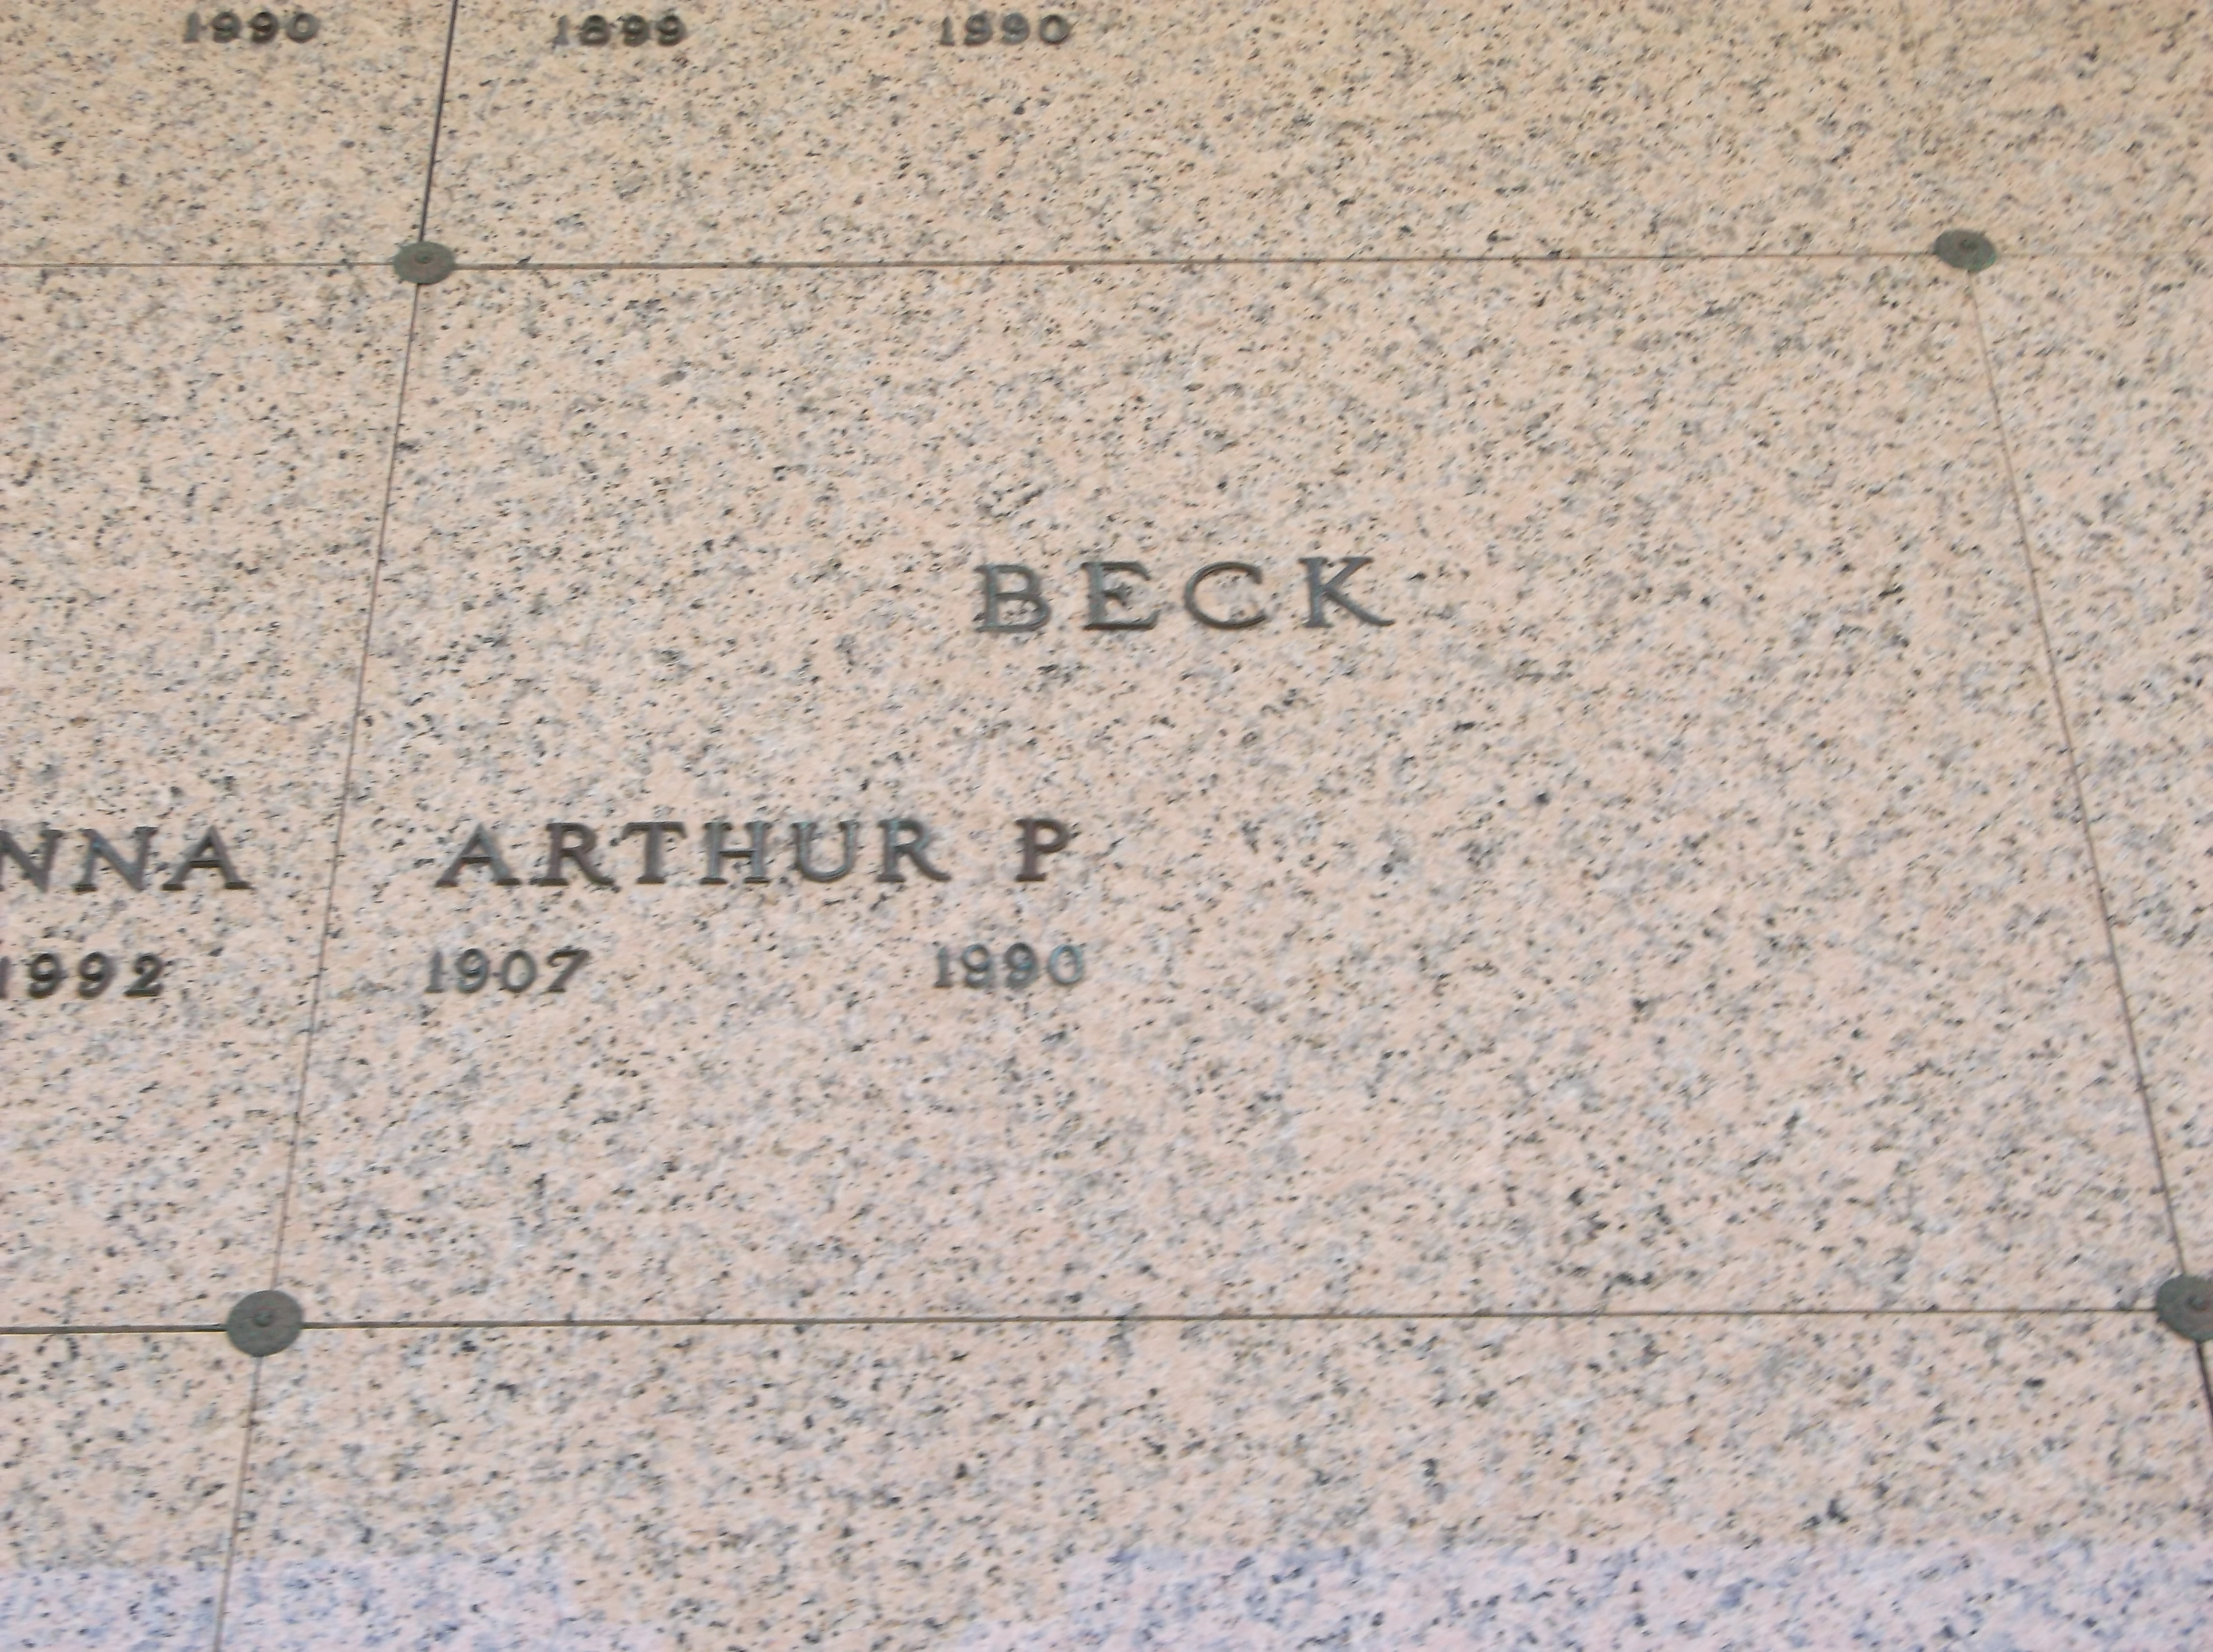 Arthur P Beck